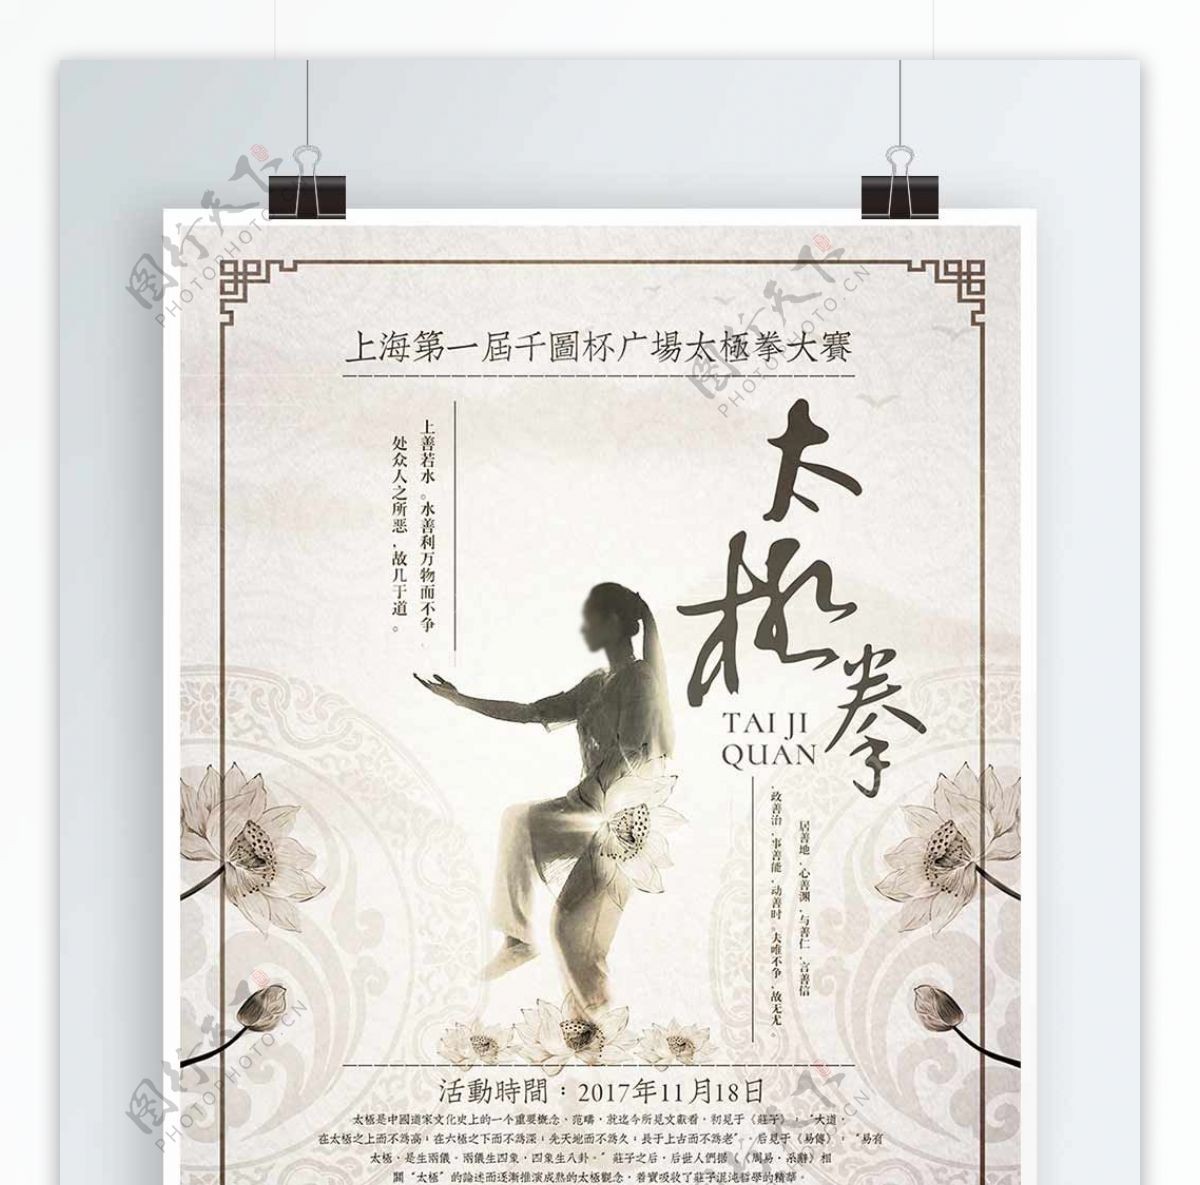 中国风简约素雅太极拳广场大赛宣传海报设计